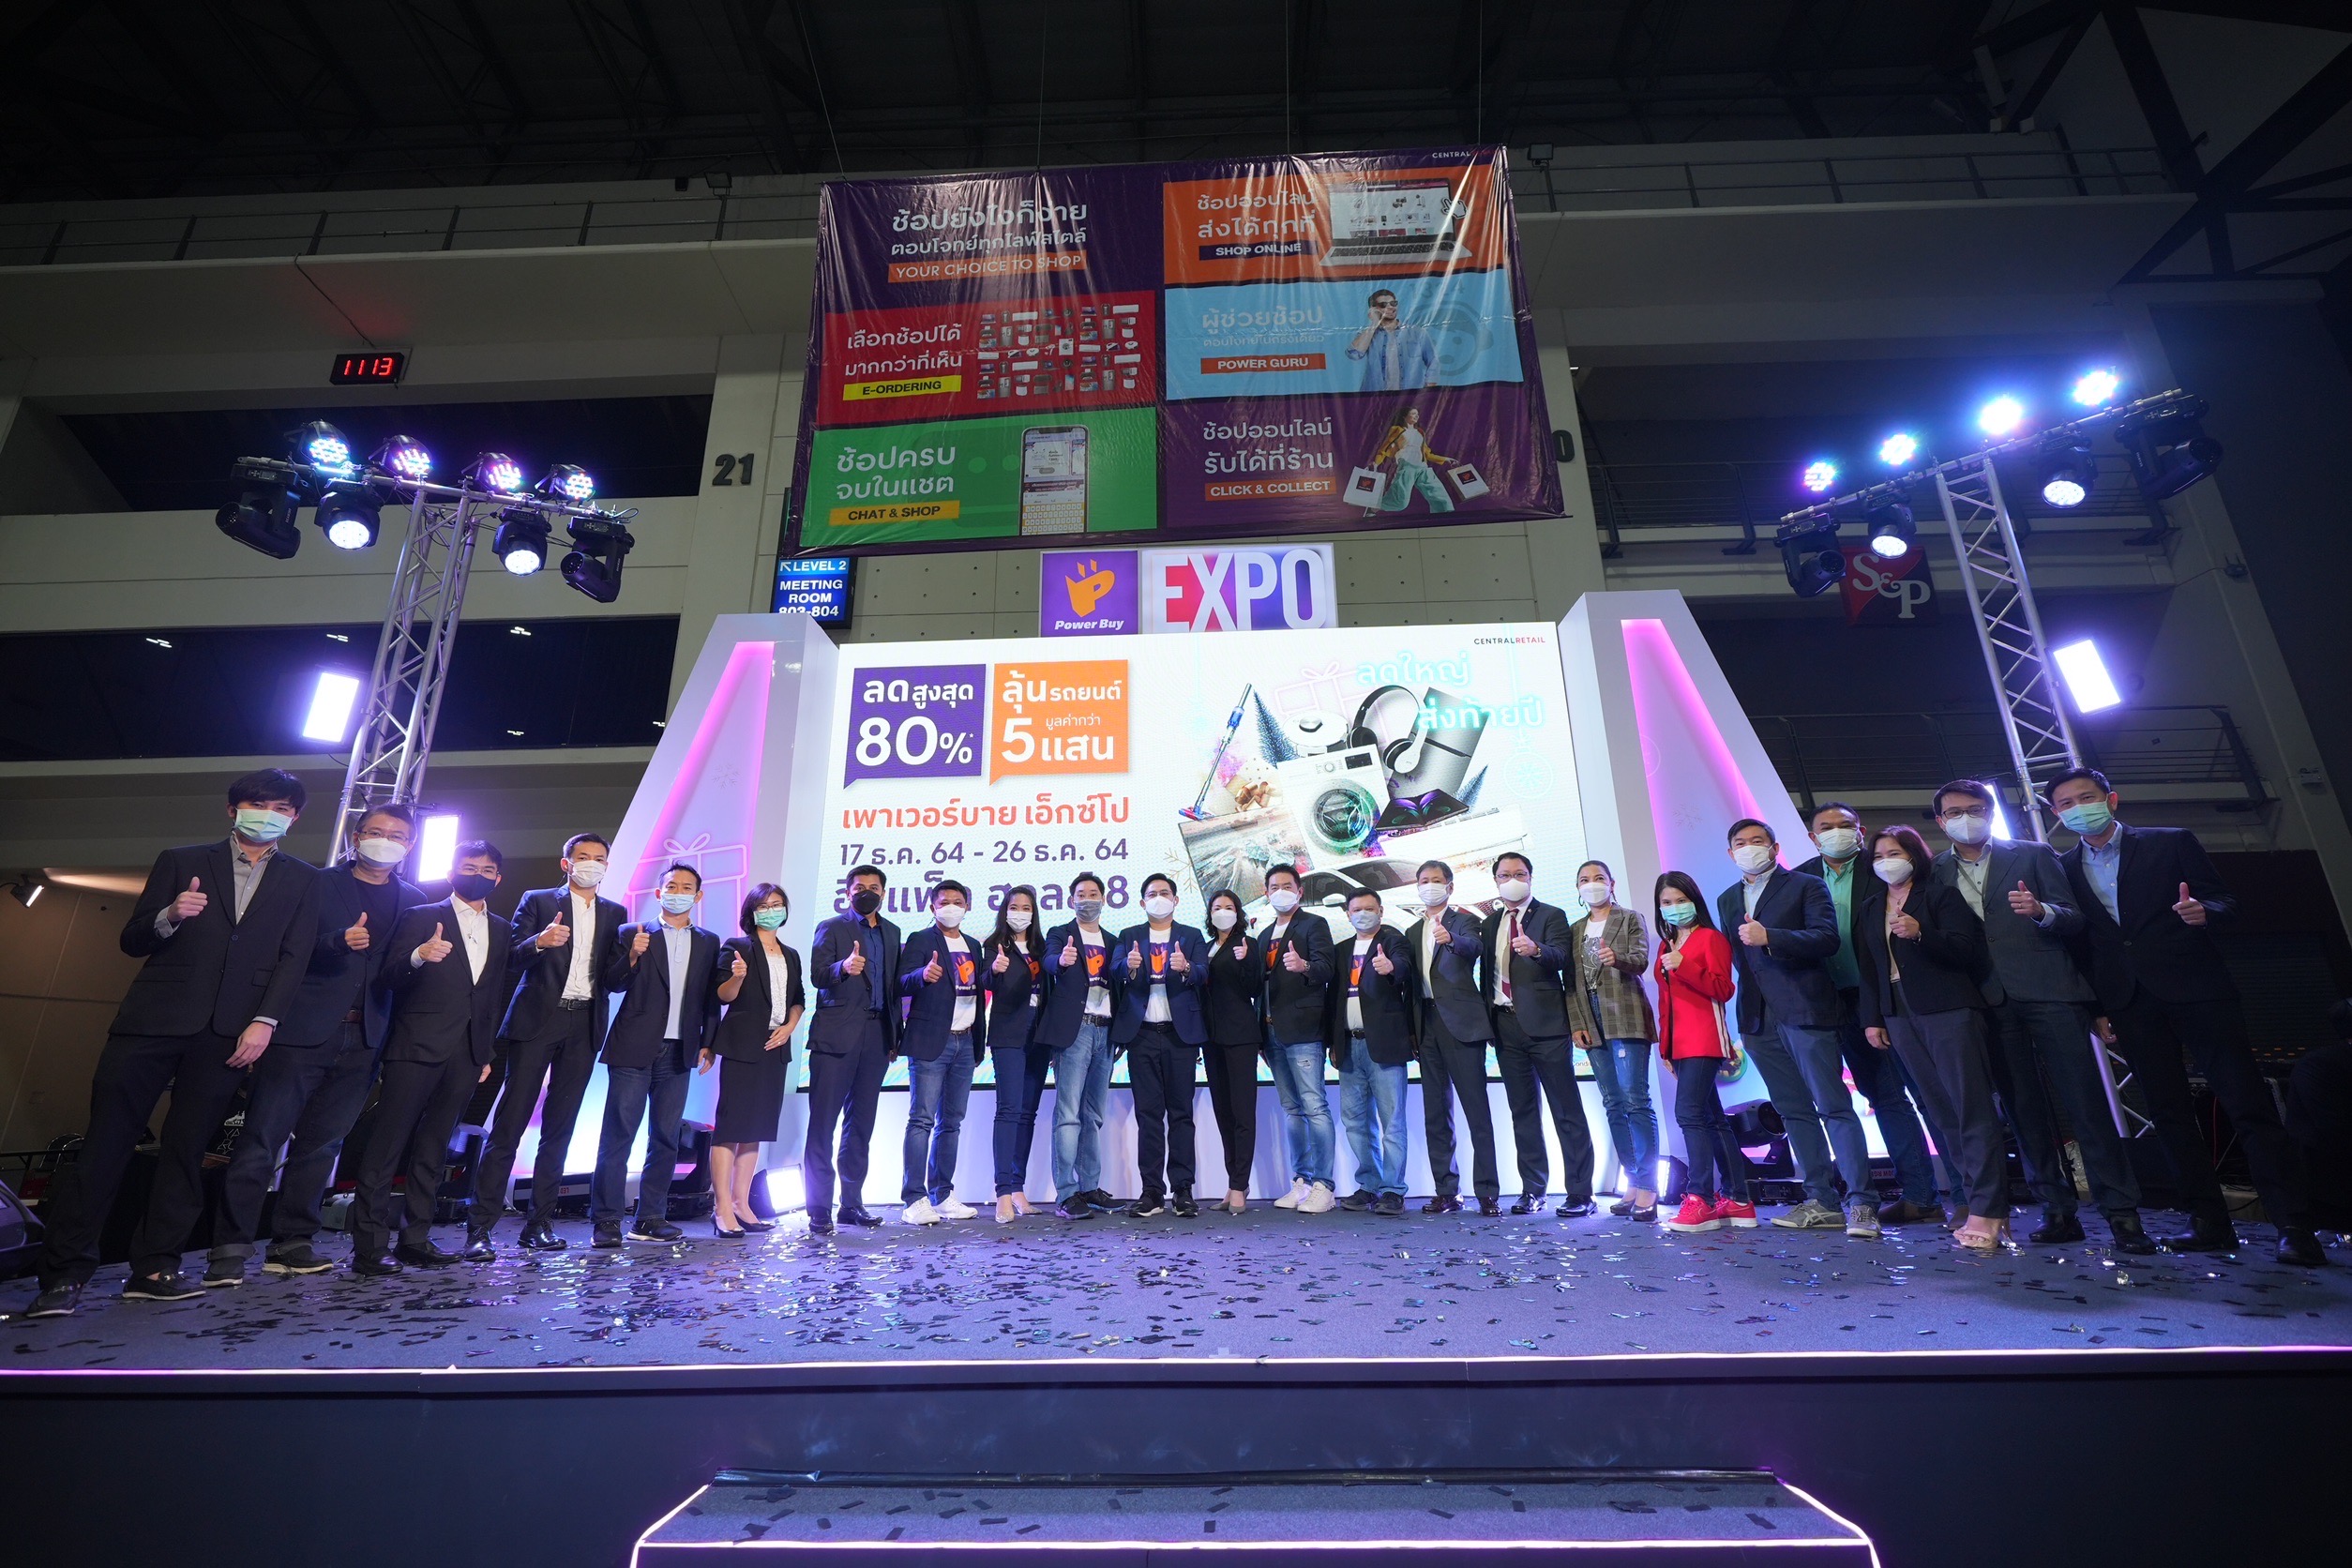 เปิดแล้ว !!! POWER BUY EXPO 2021 - Power Your Future มหกรรมเครื่องใช้ไฟฟ้าและเทคโนโลยีใหญ่ที่สุดของไทย ลดใหญ่ ส่งท้ายปลายปี ด้วยโปรโมชั่นแรงตลอดงาน 17-26 ธ.ค นี้ ฮอลล์ 8 อิมแพค เมืองทองธานี